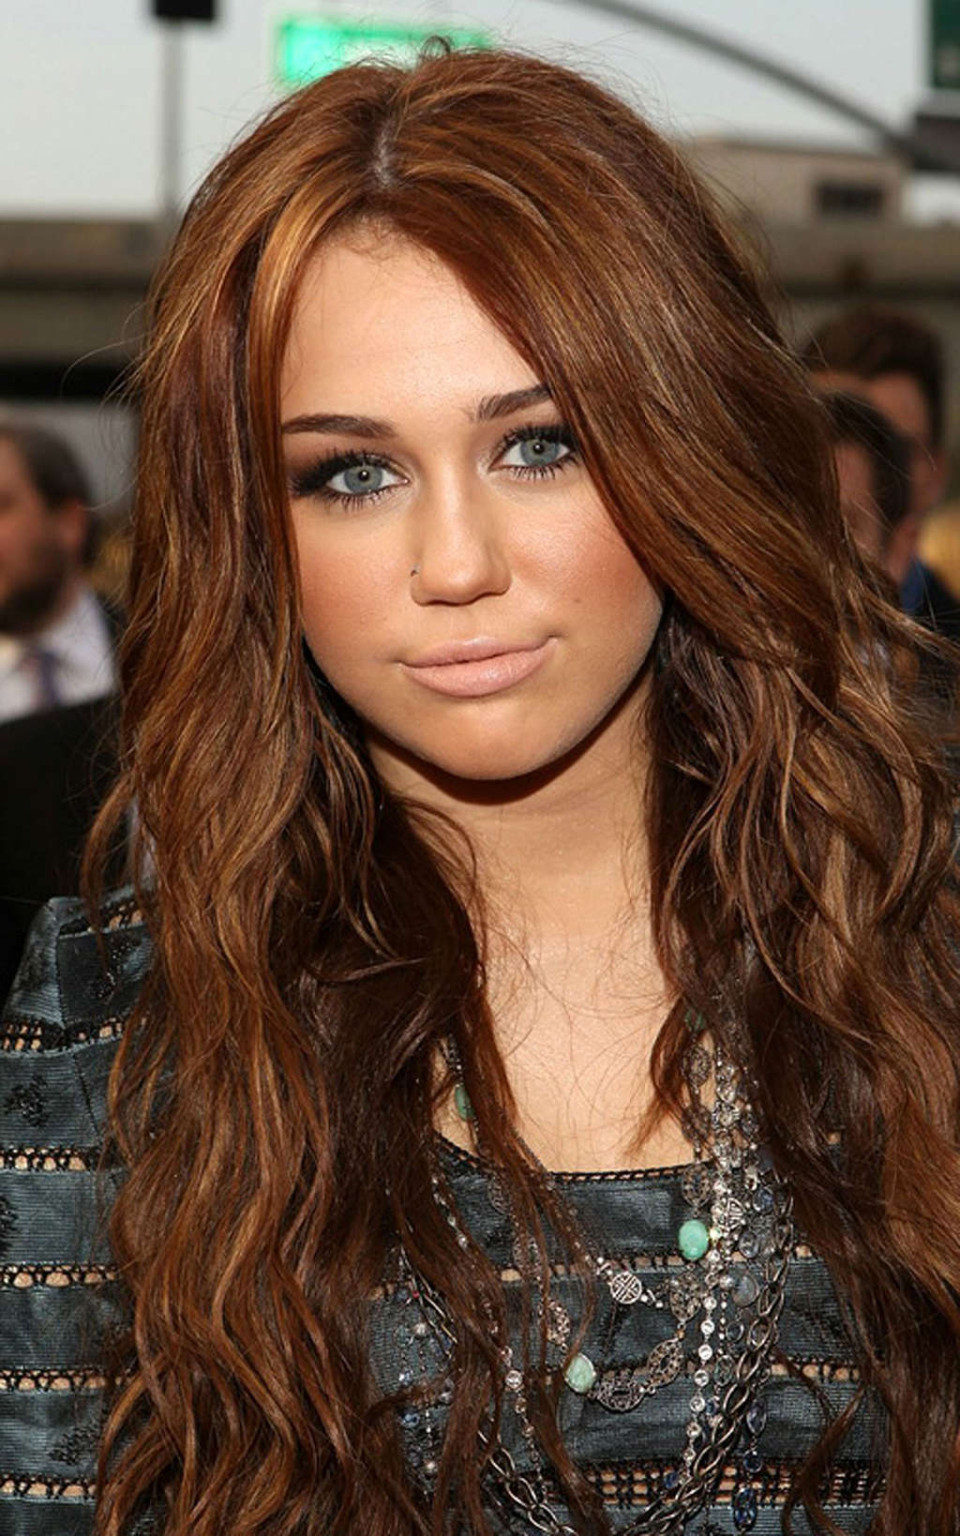 Miley cyrus très leggy en mini-jupe et jupe haute en voiture photos paparazzi
 #75361381